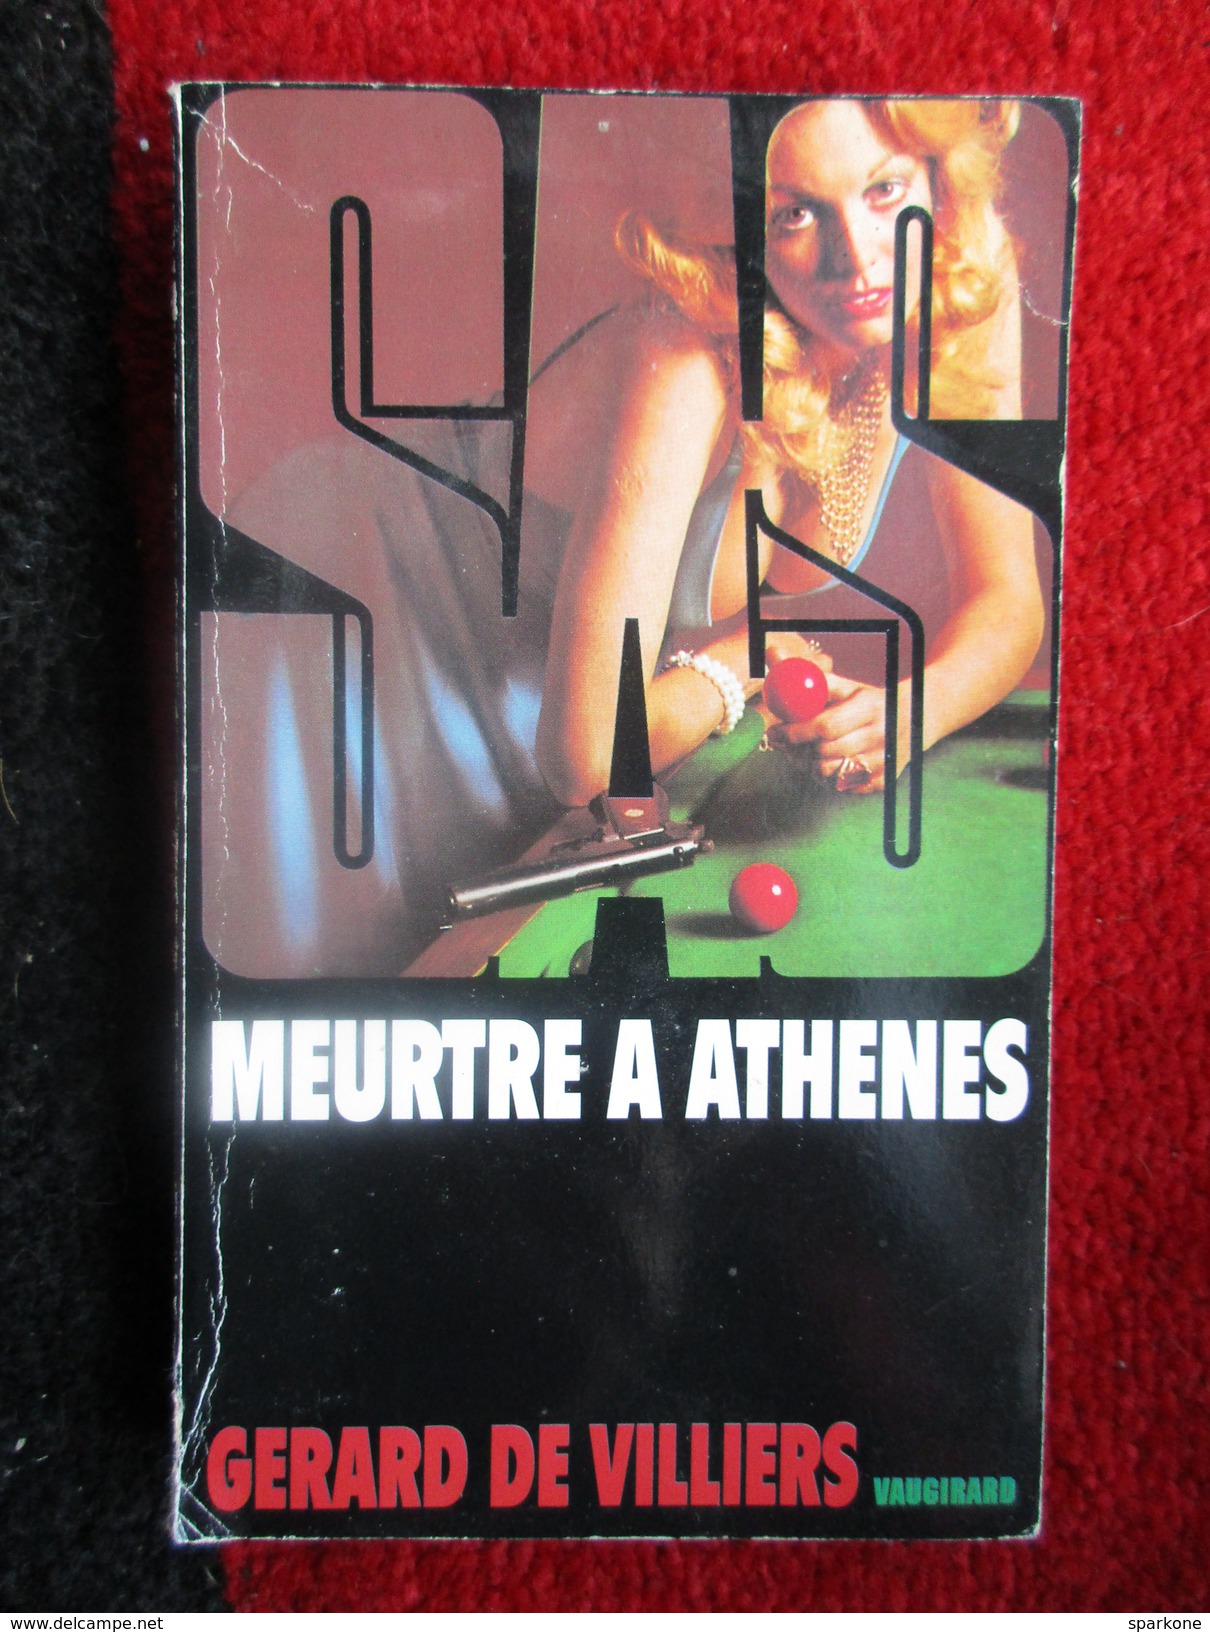 Meurtre A Athenes (Gérard De Viliers) éditions Vaugirard De 1996 - Gerard De Villiers